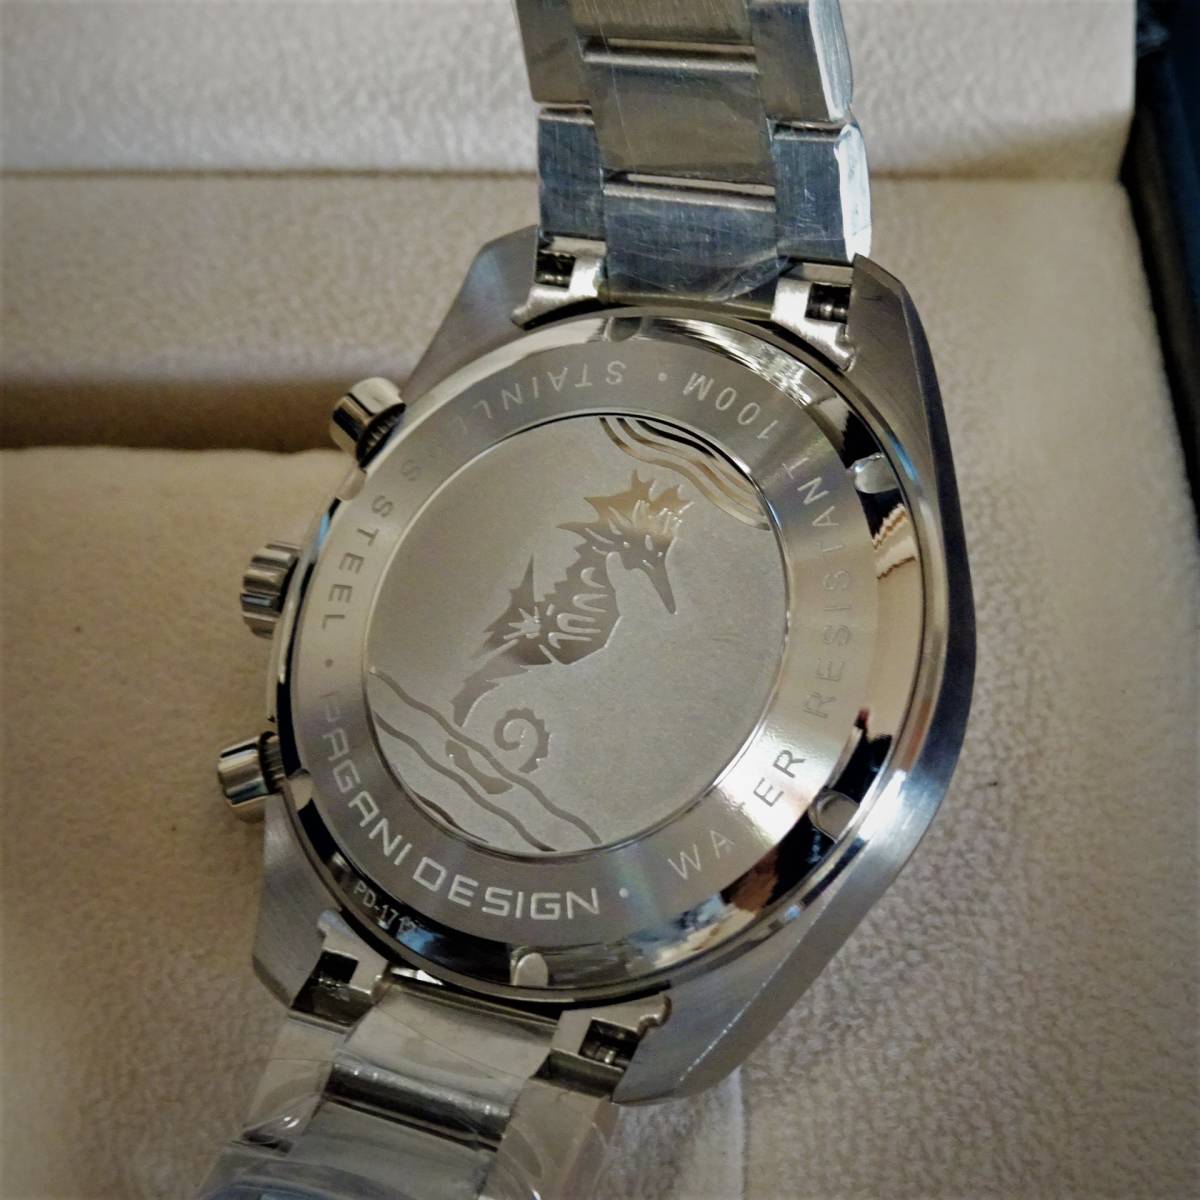 1円〓新品〓メンズクオーツ式腕時計セイコー製VK63ムーブメント搭載オマージュウオッチPAGANI DESIGN〓ホワイトPD-1712_画像6